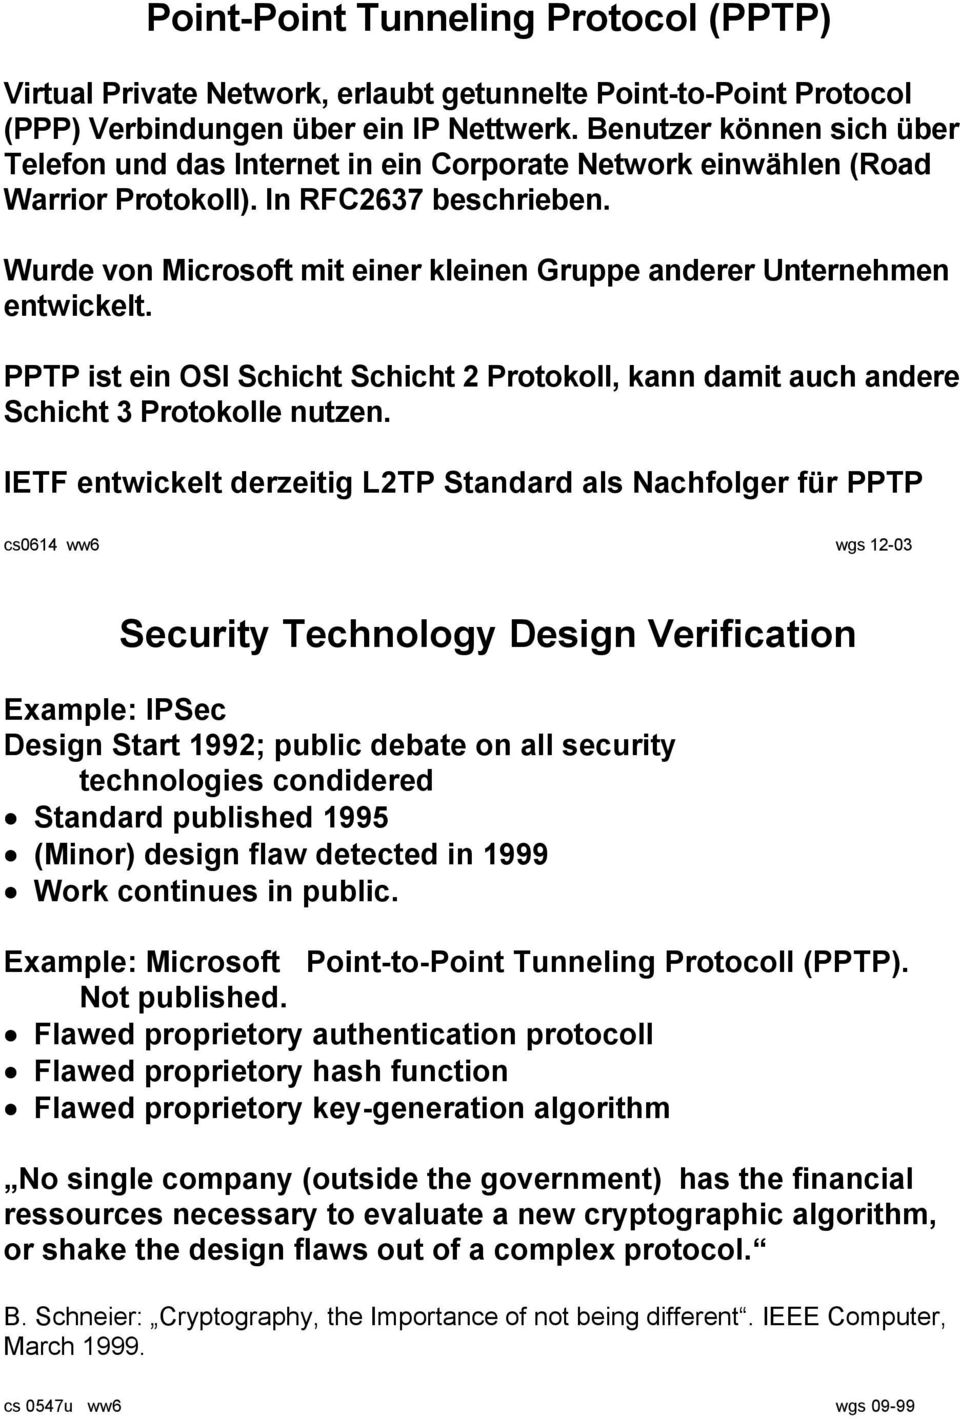 Wurde von Microsoft mit einer kleinen Gruppe anderer Unternehmen entwickelt. PPTP ist ein OSI Schicht Schicht 2 Protokoll, kann damit auch andere Schicht 3 Protokolle nutzen.